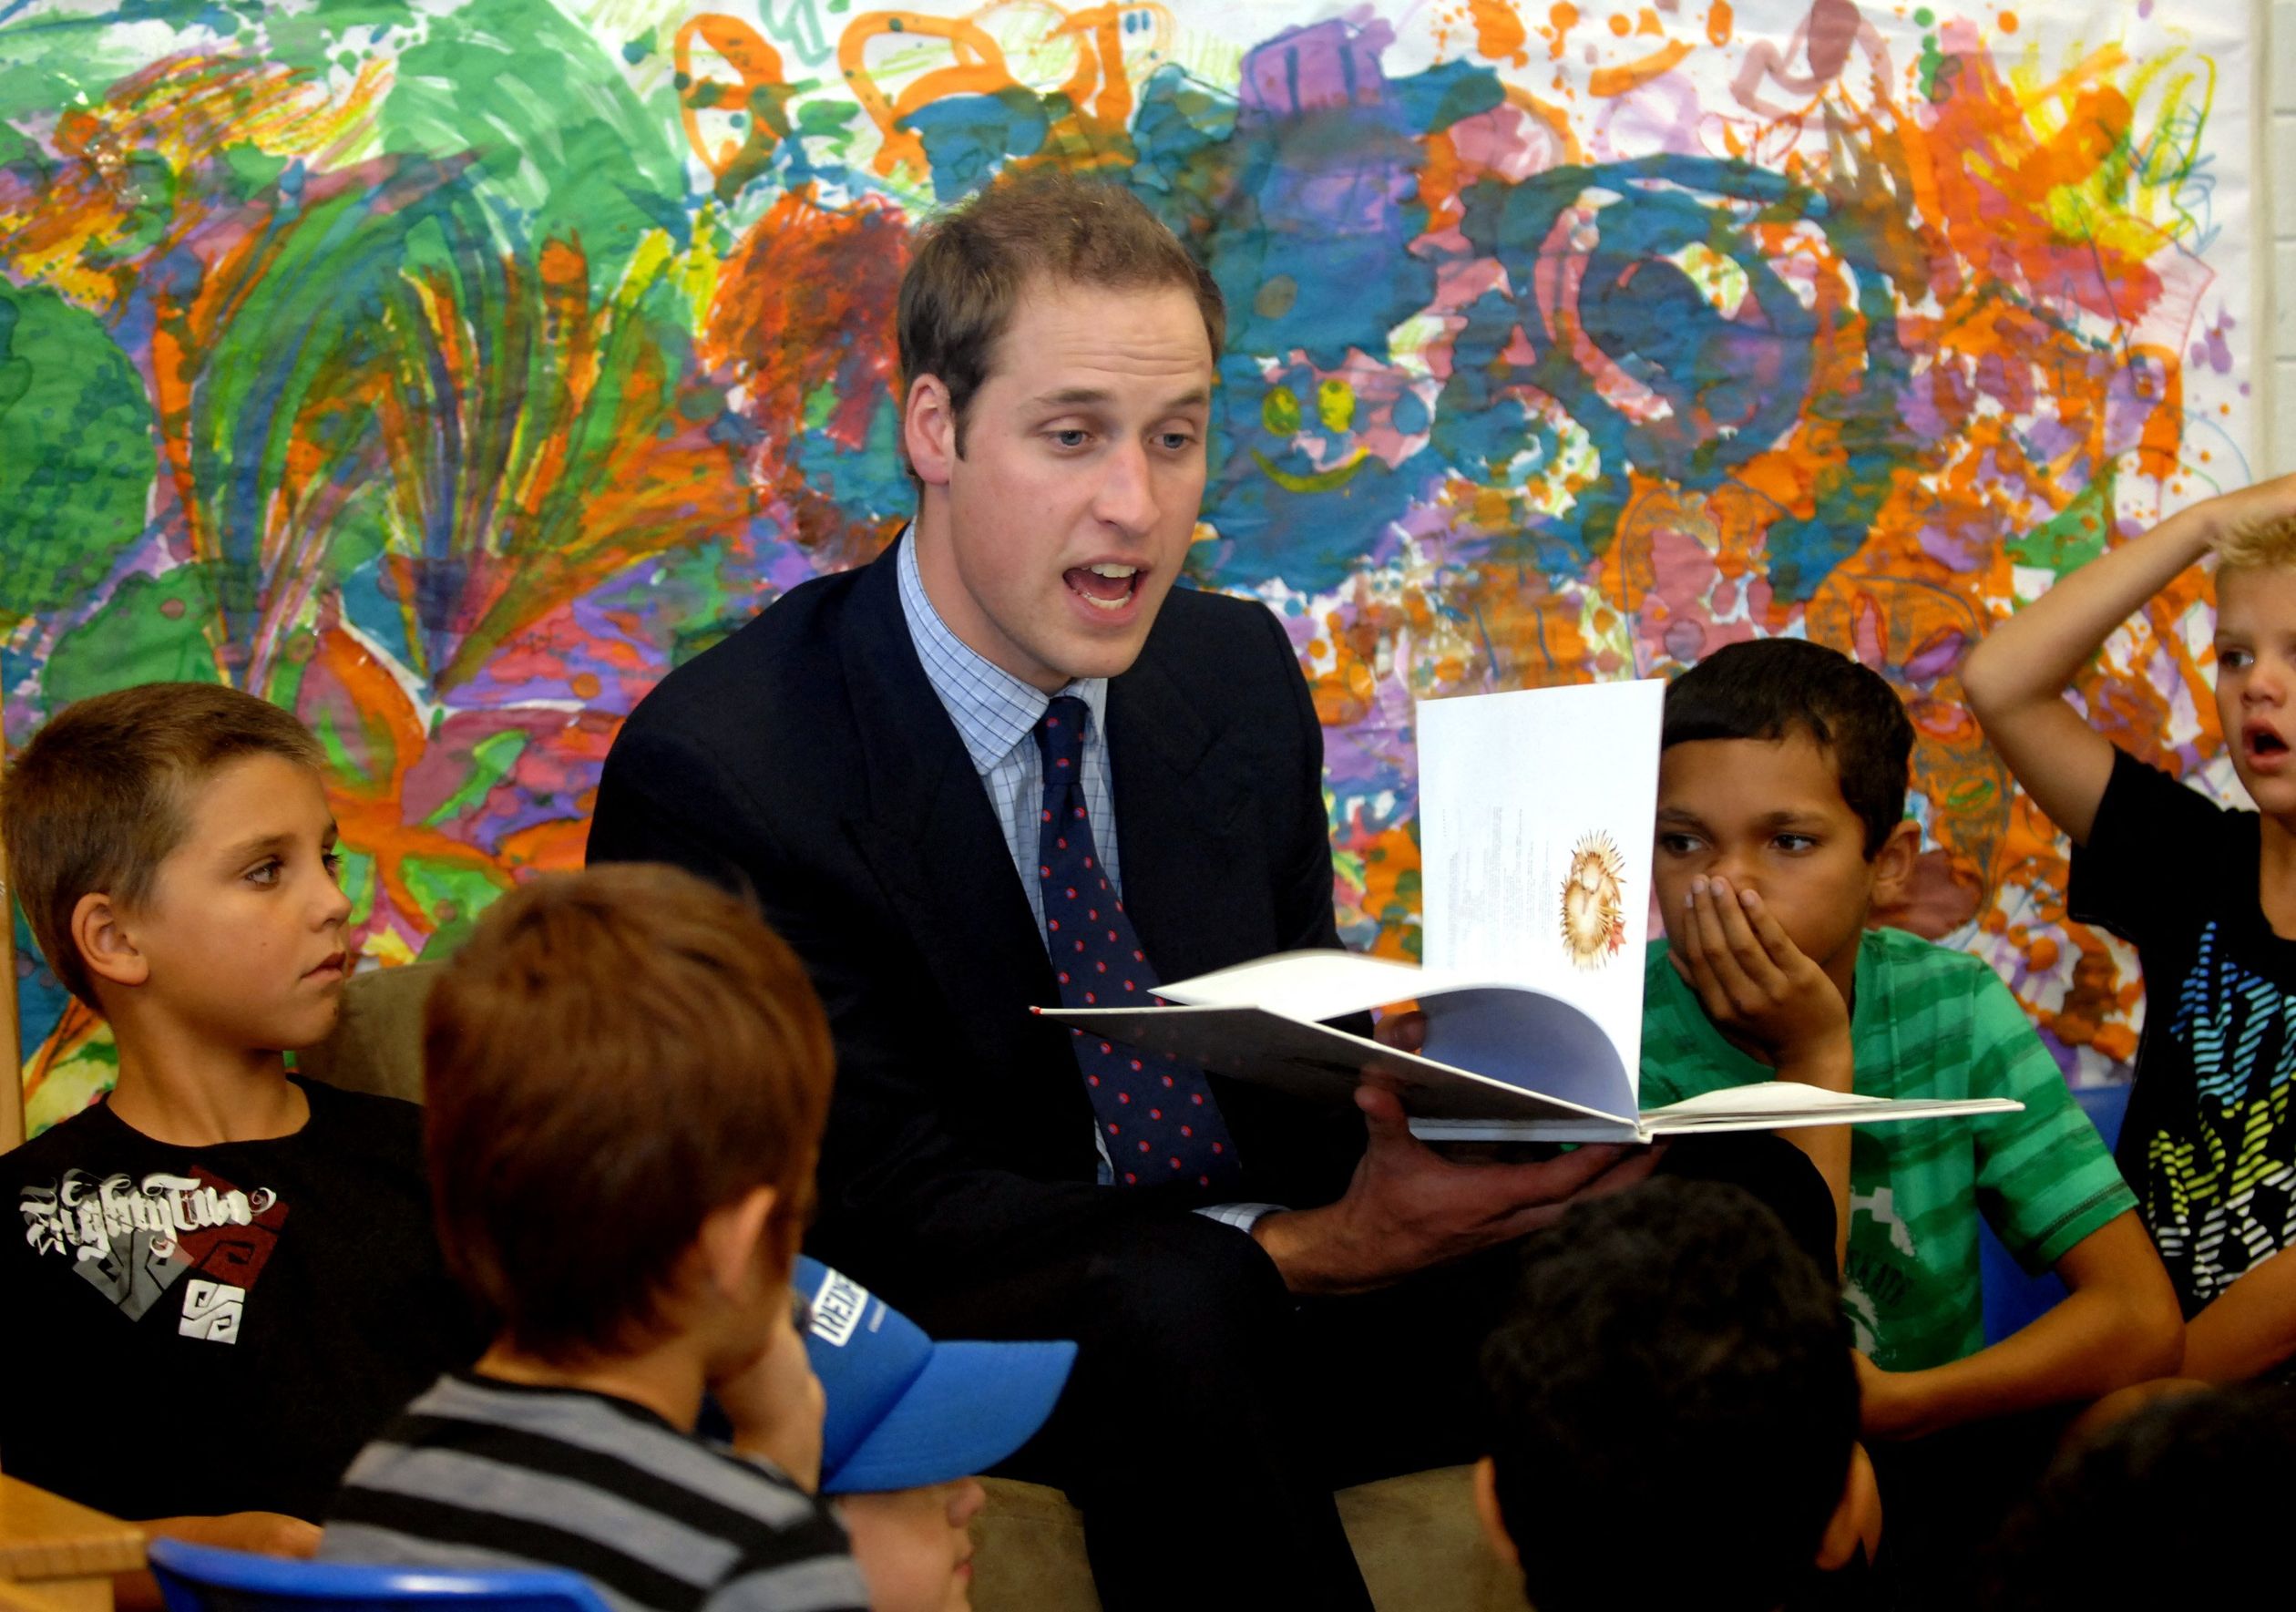 In 2010 leest William voor aan een klas kinderen.